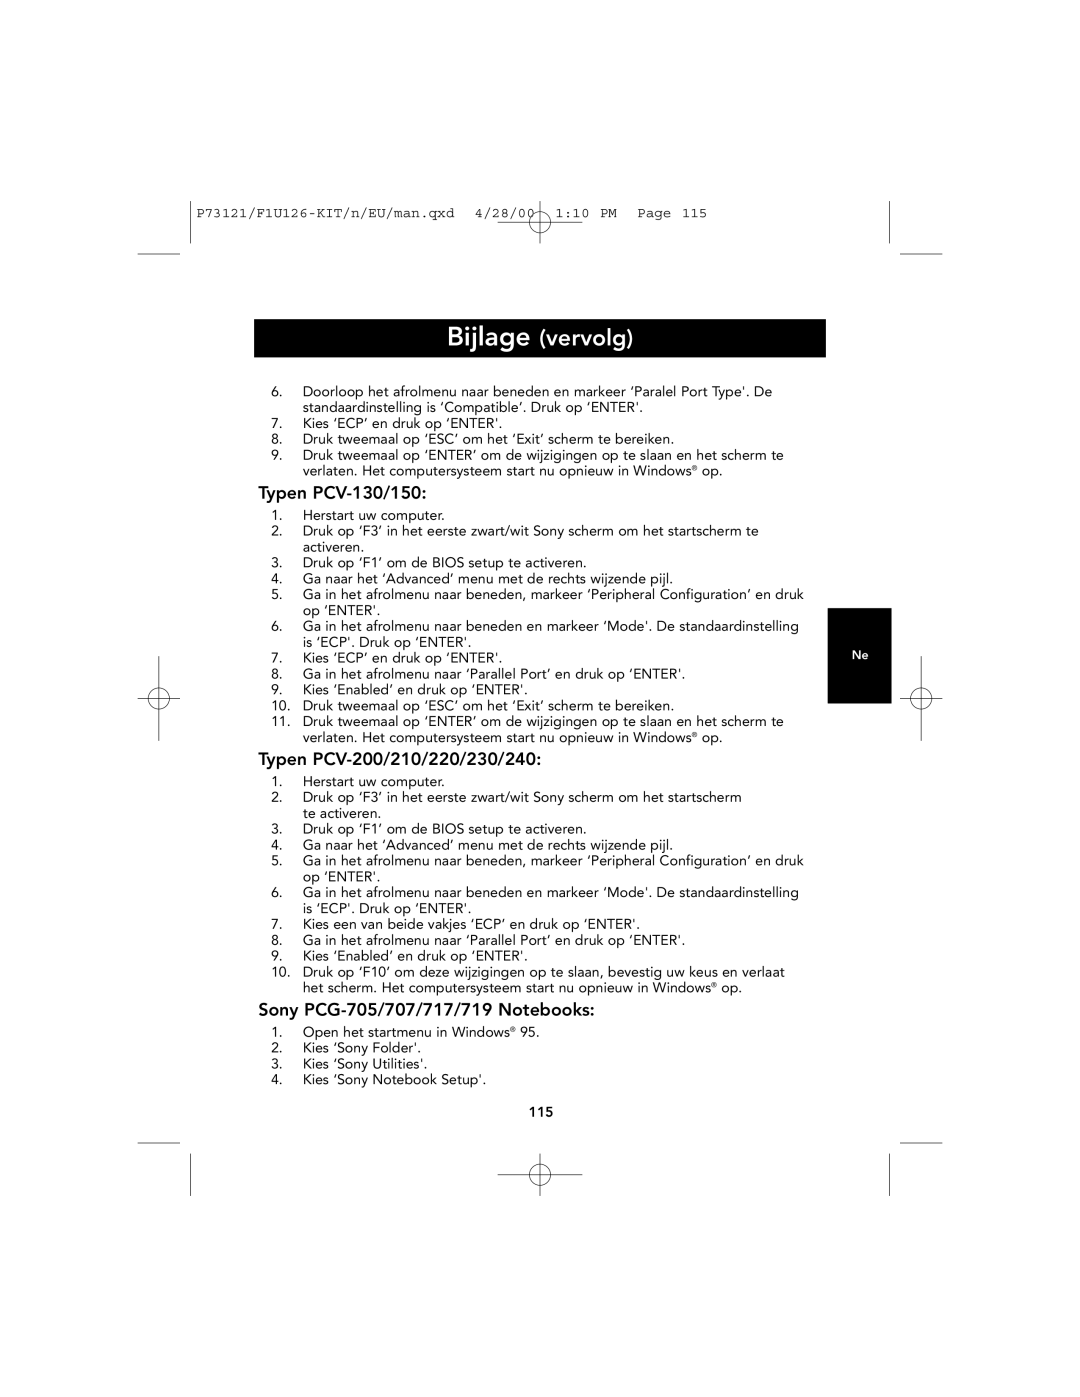 Belkin P73121, F1U126-KIT user manual Bijlage vervolg, Kies ‘ECP’ en druk op ‘ENTER 